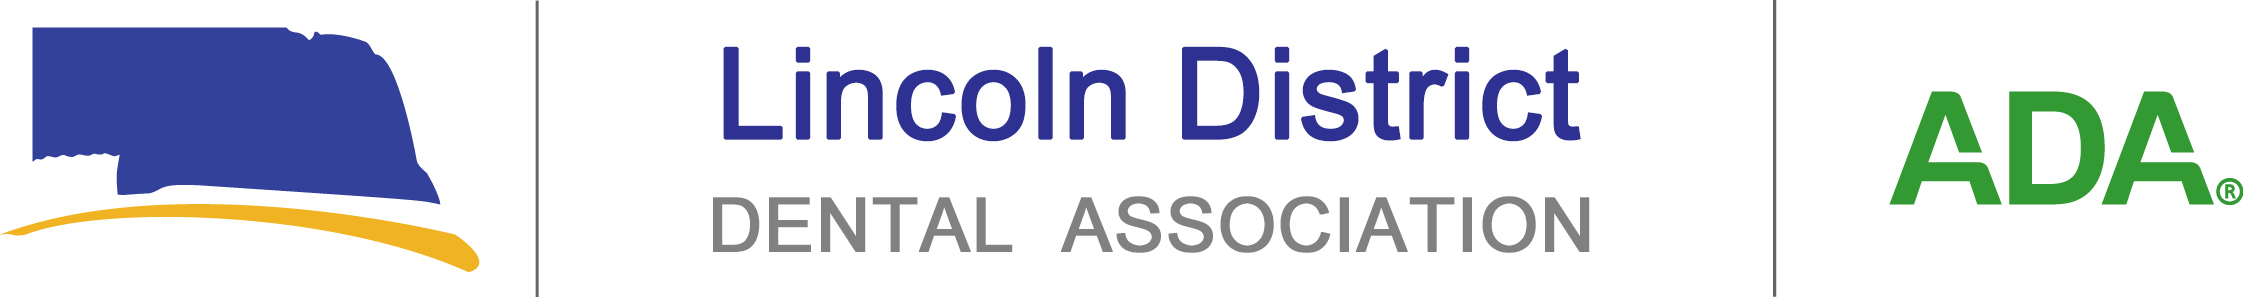 Lincoln -NDA-ADA_Logo_horiz_JPEG